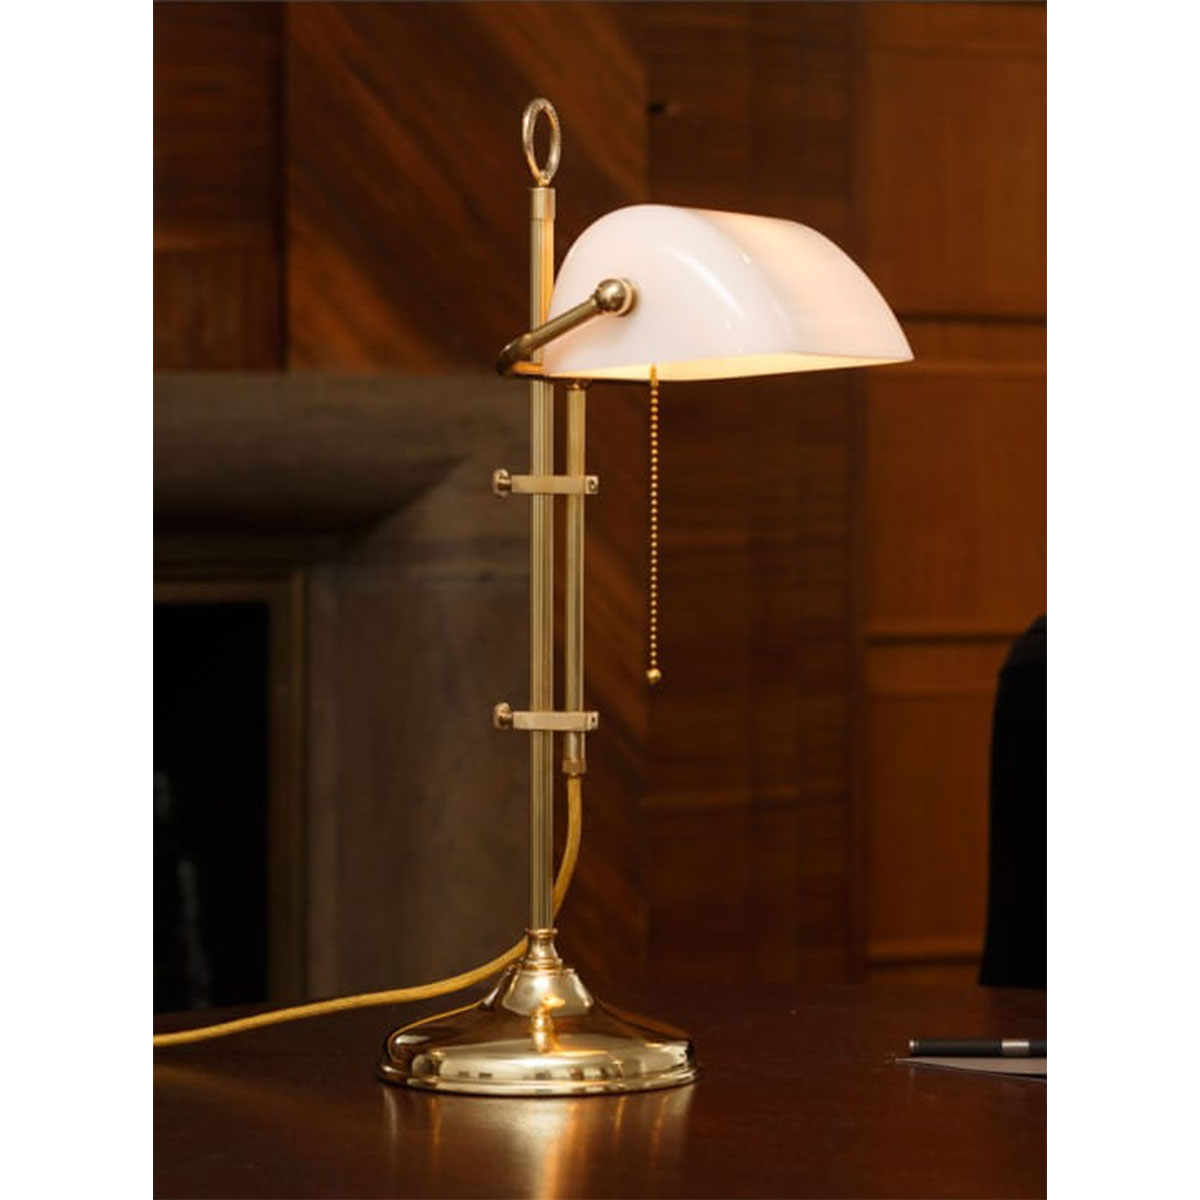 Klassische Schreibtischlampe: Bankerlampe mit rundem Sockel: Mit weißem Glasschirm, Messingteile poliert, Stange kanneliert